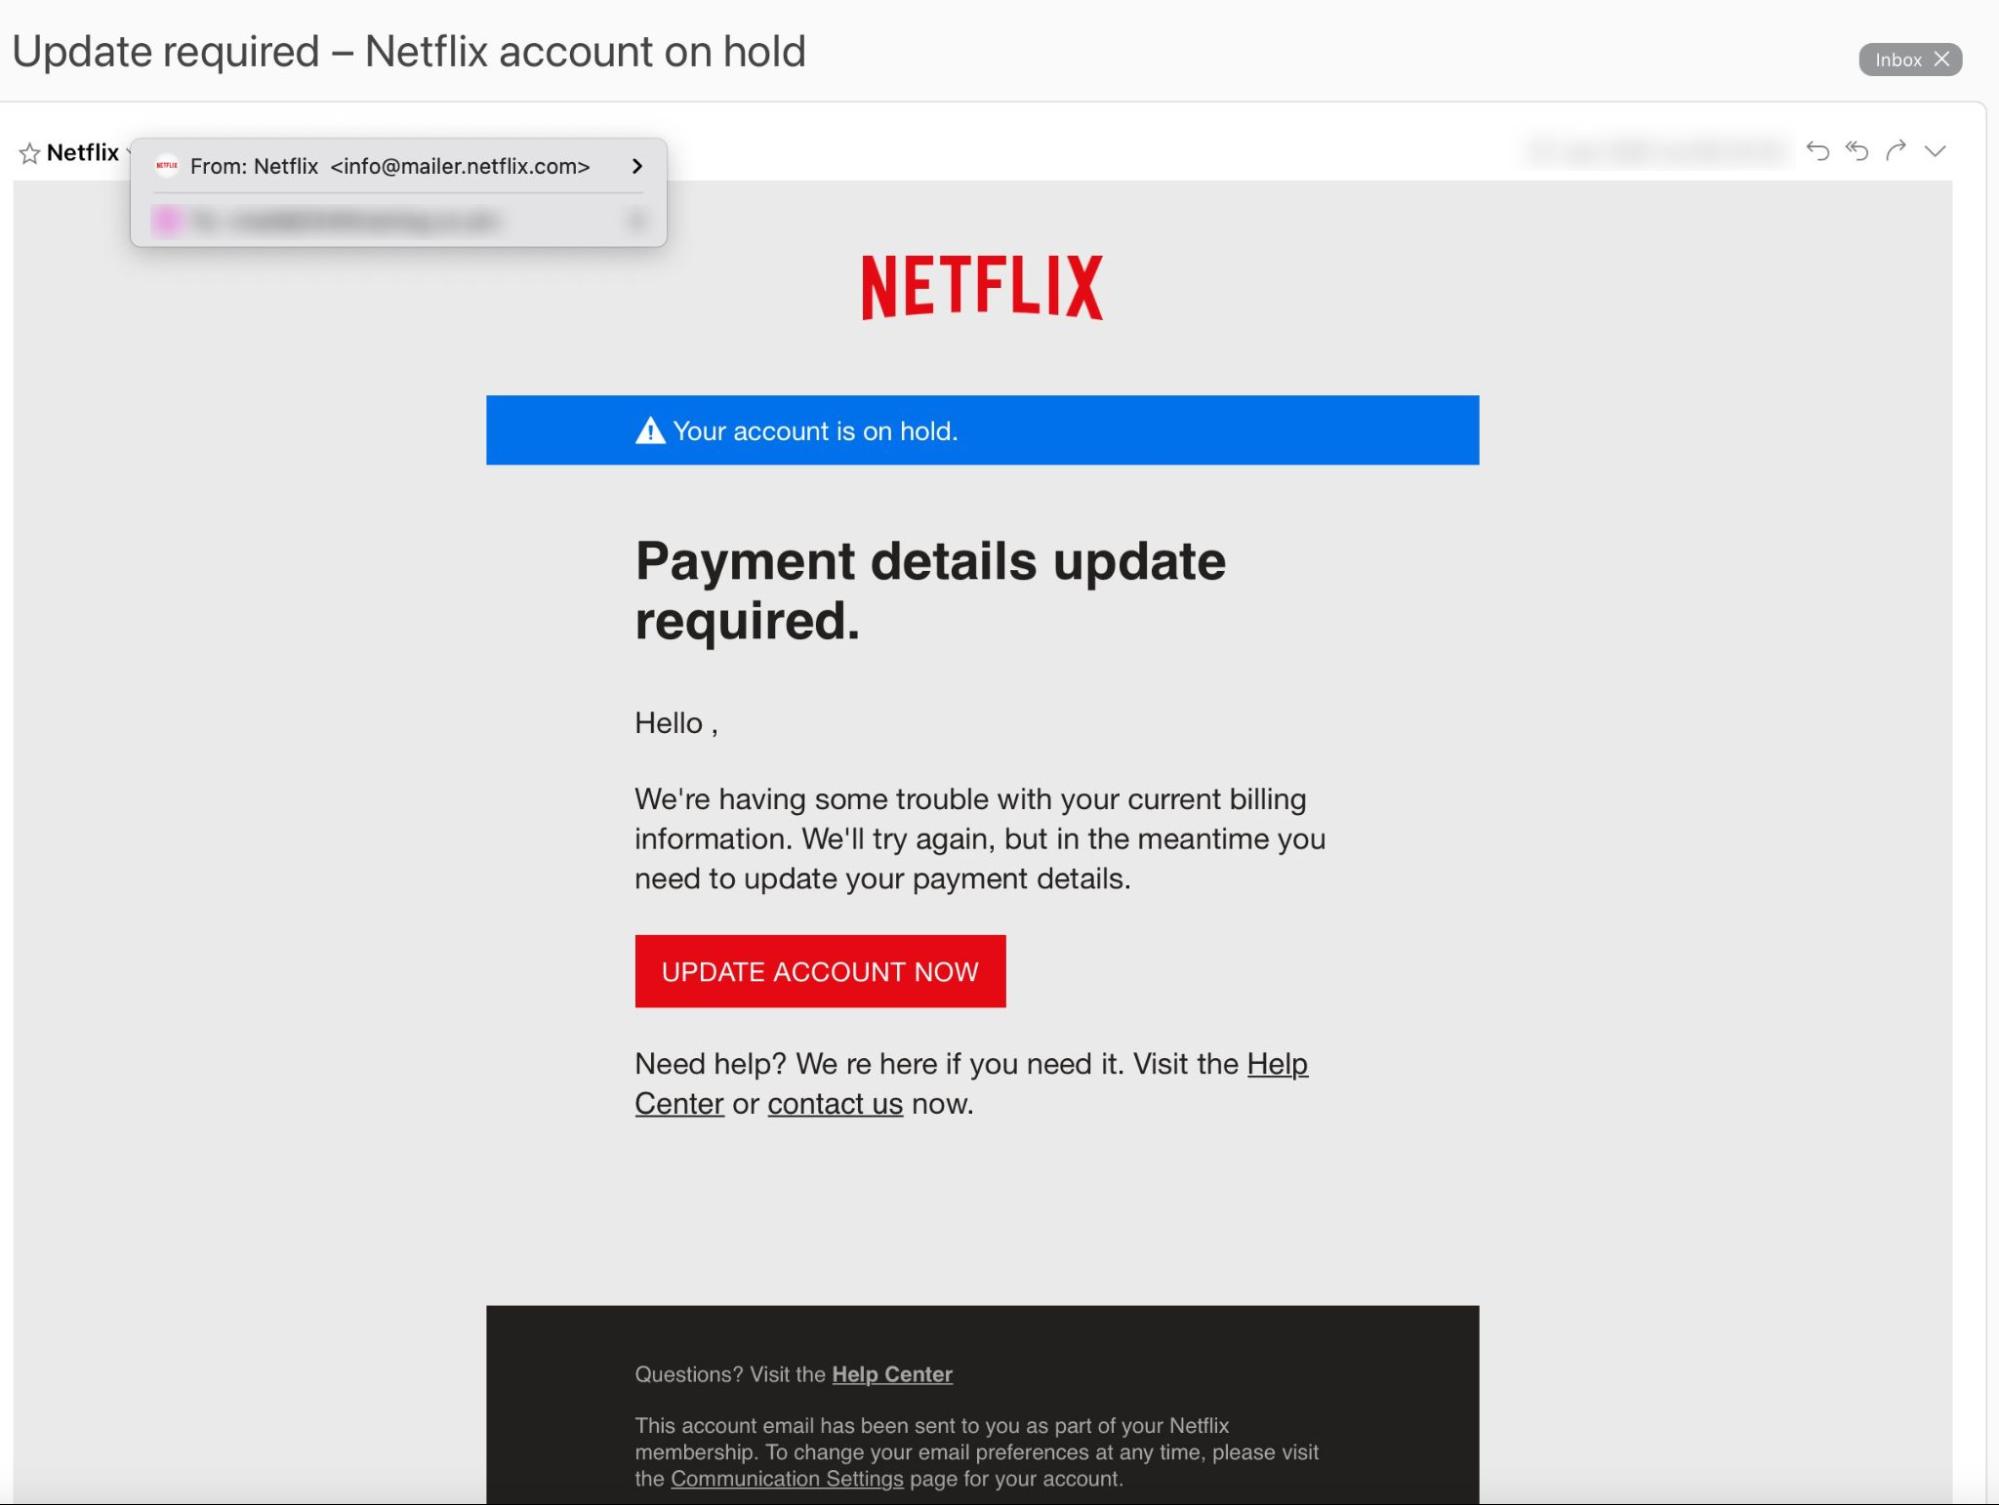 Fake Netflix malware email